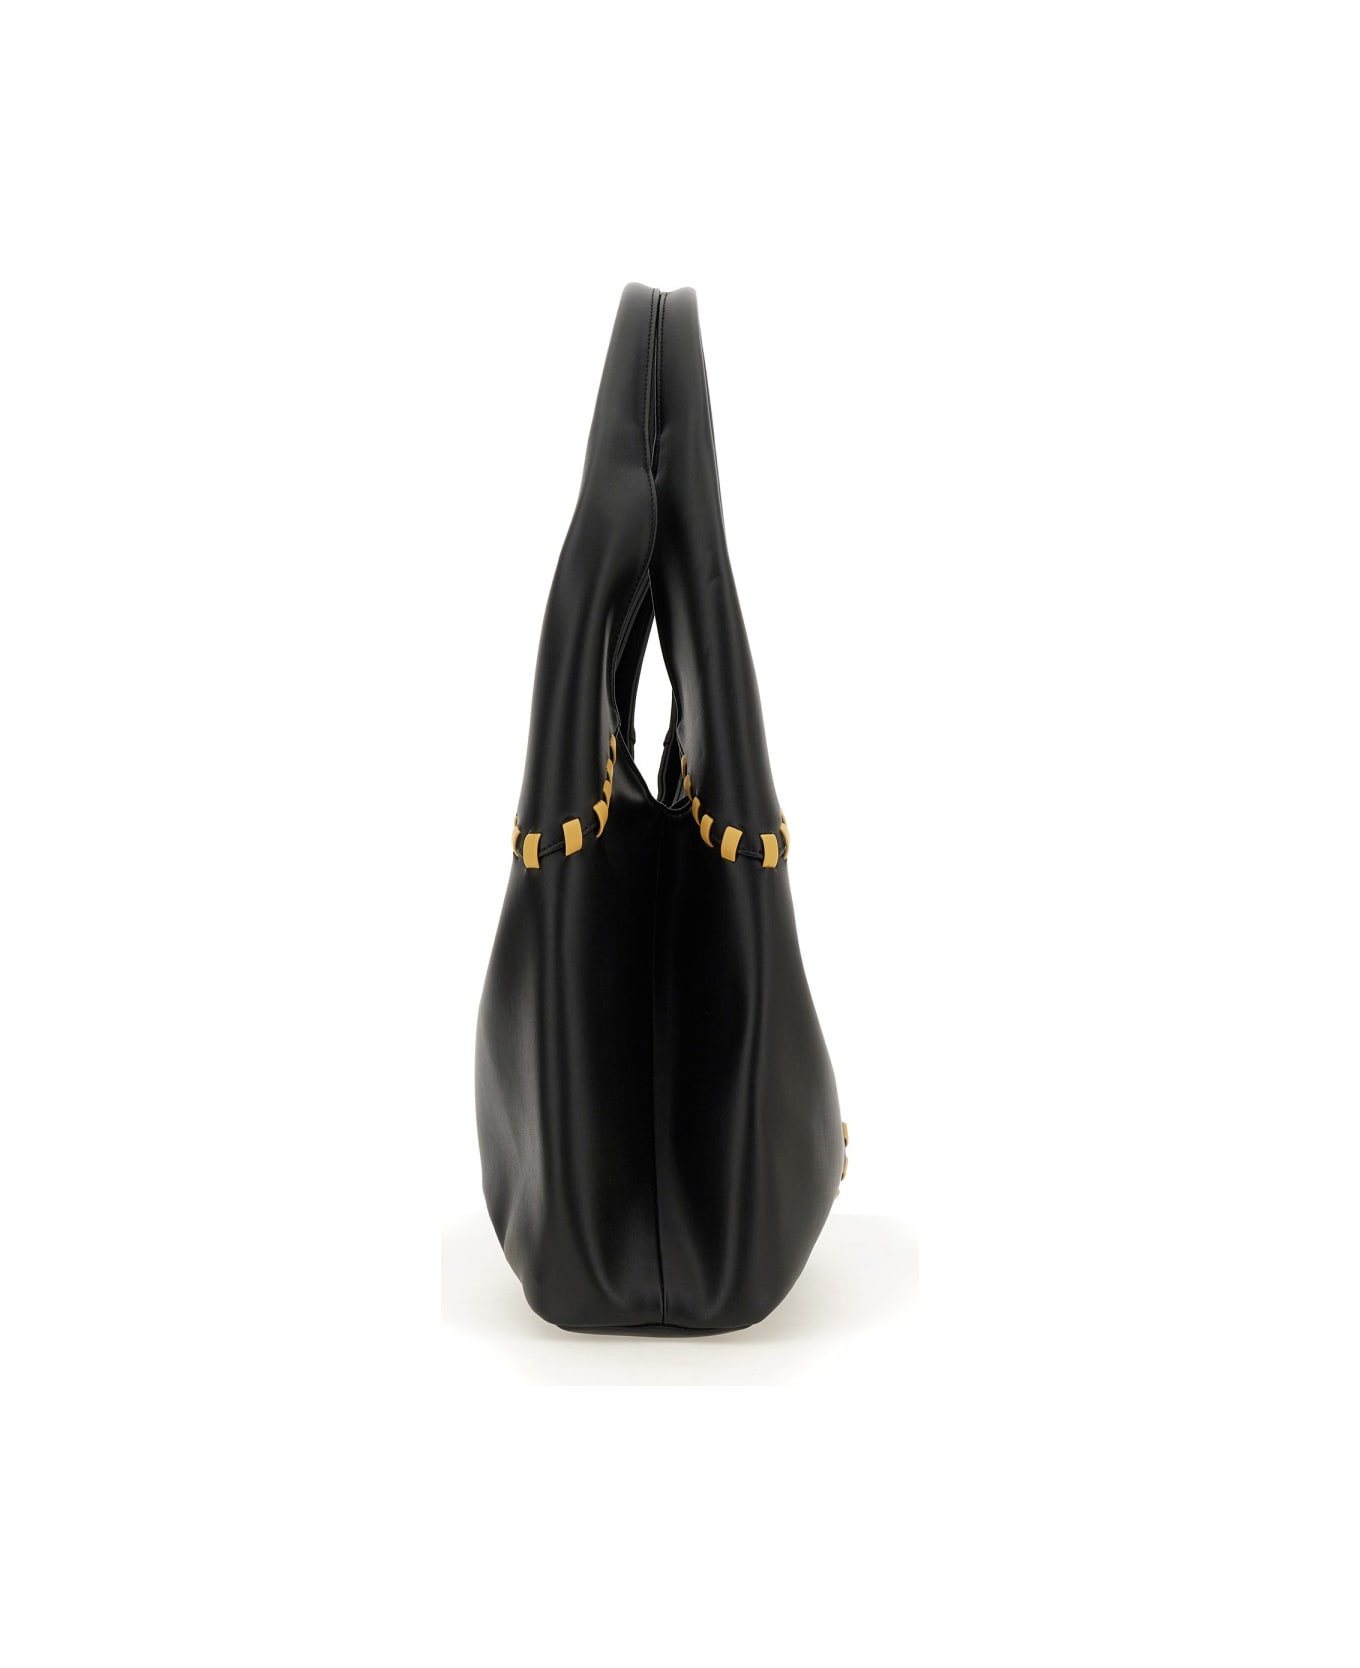 THEMOIRè Bag "ninfa" - BLACK トートバッグ